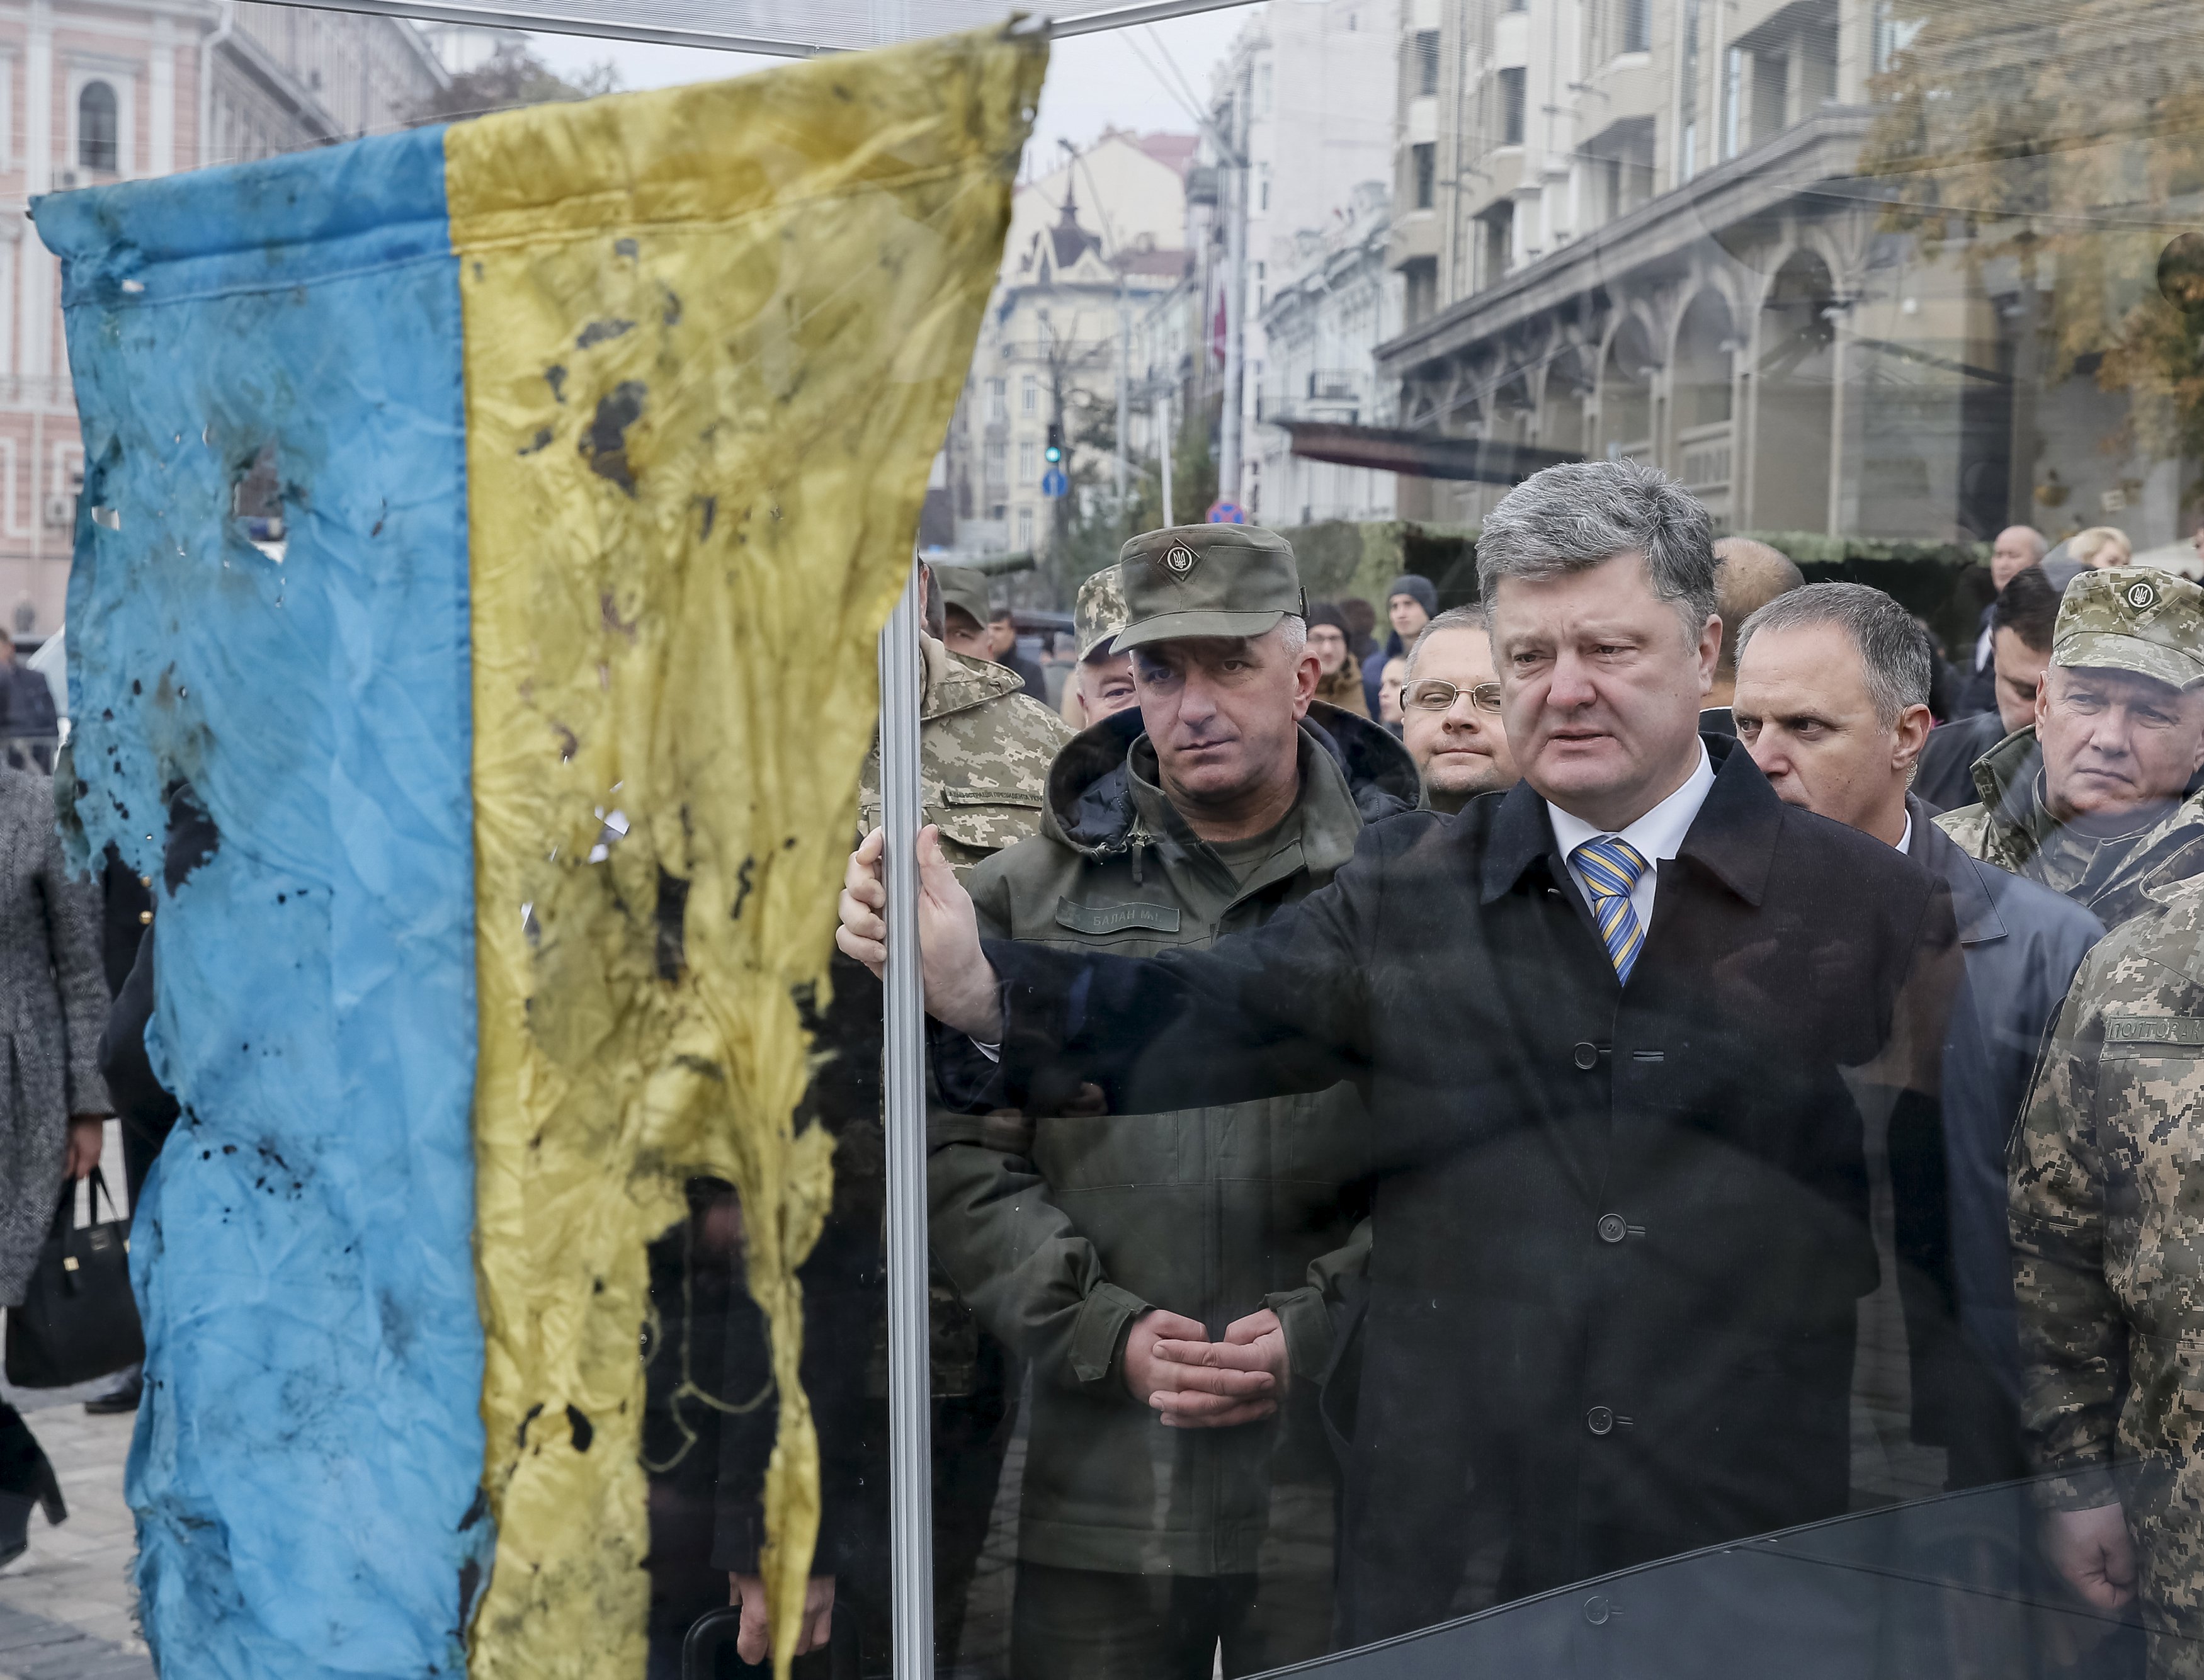 Presiden Ukraina Petro Poroshenko (tengah) melihat bendera Ukraina yang dibawa dari wilayah timur Ukraina dimana konflik militer terjadi, selama kunjungannya di pameran peralatan militer baru di Kiev, Ukraina, 14 Oktober 2015. Ukraina merayakan Hari Pertahanan pada hari Rabu. ANTARA FOTO/REUTERS/Gleb Garanich.